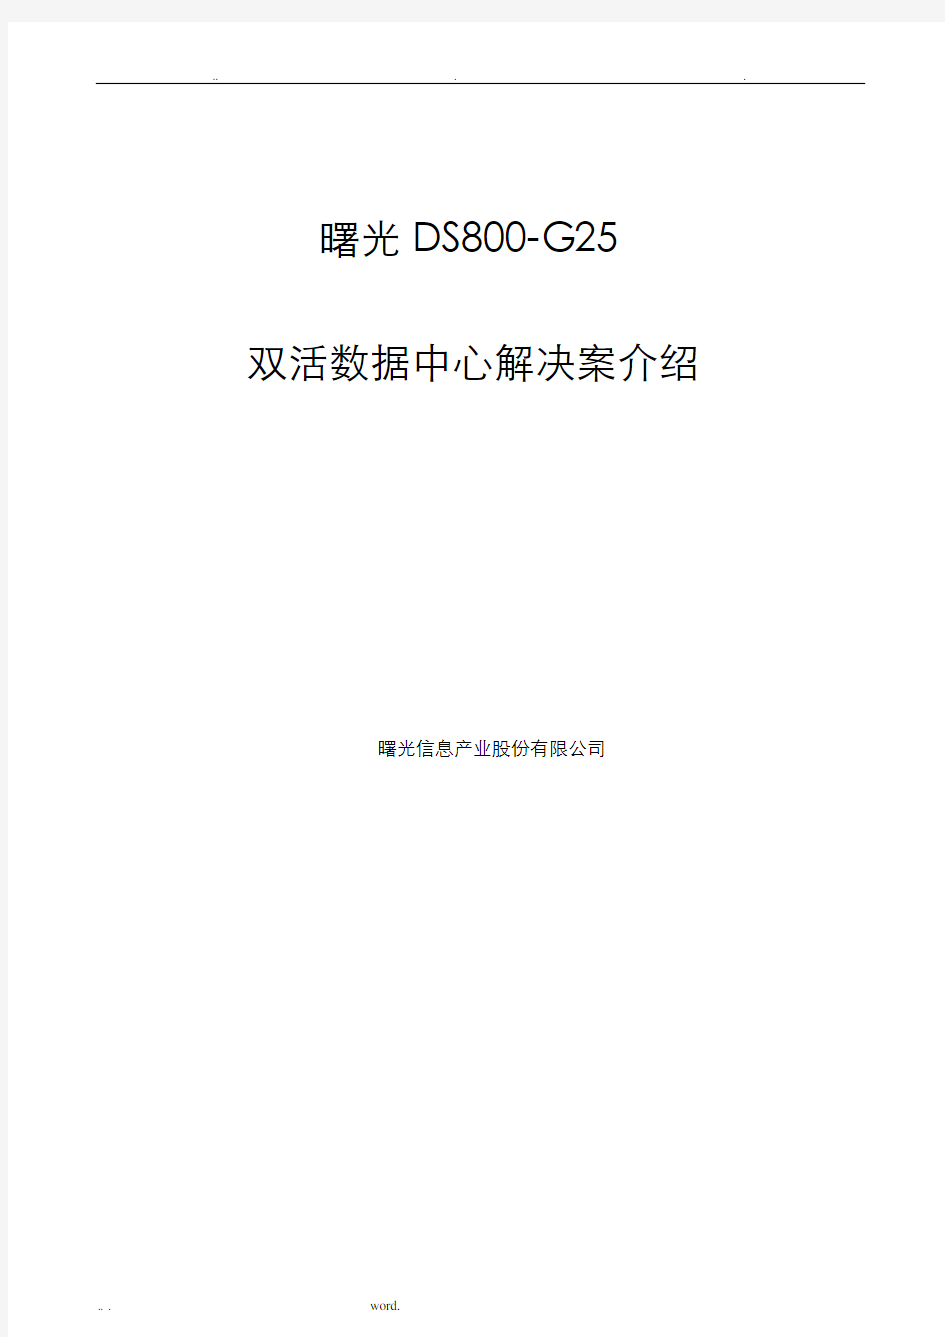 曙光DS800-G25双活数据中心解决方案介绍